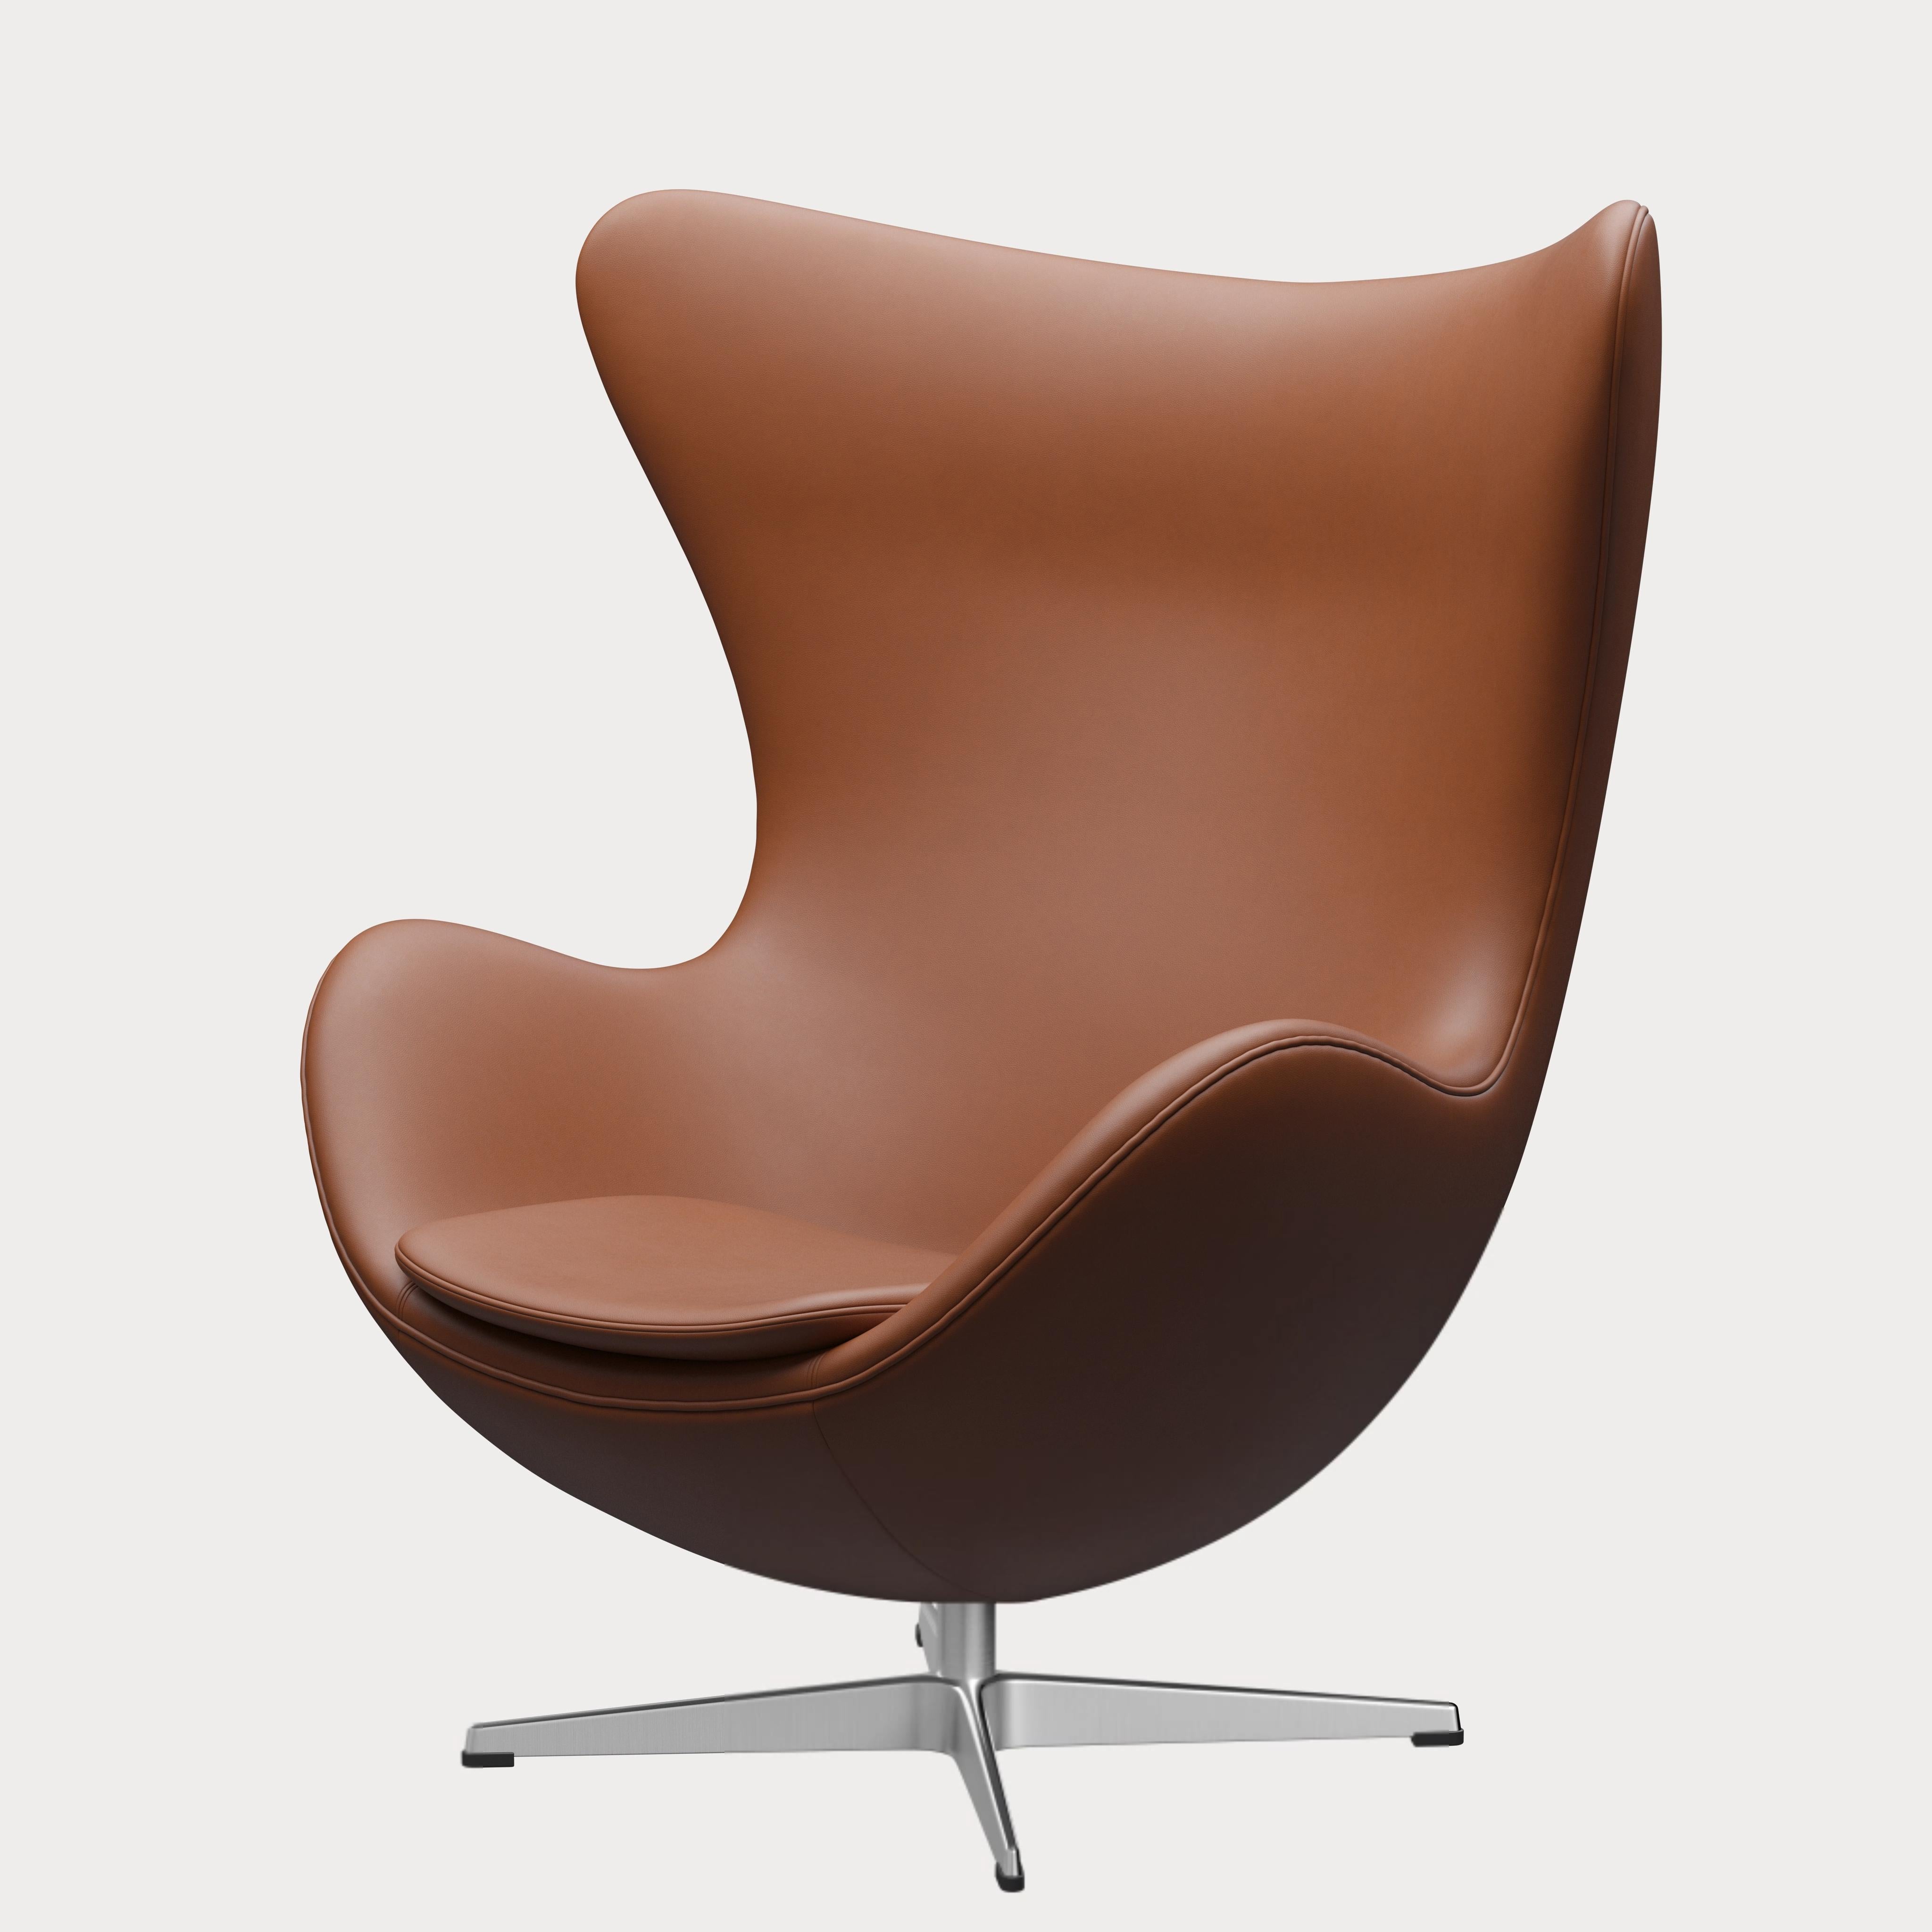 Arne Jacobsen 'Egg' Chair for Fritz Hansen in Leather Upholstery (Cat. 3) For Sale 3